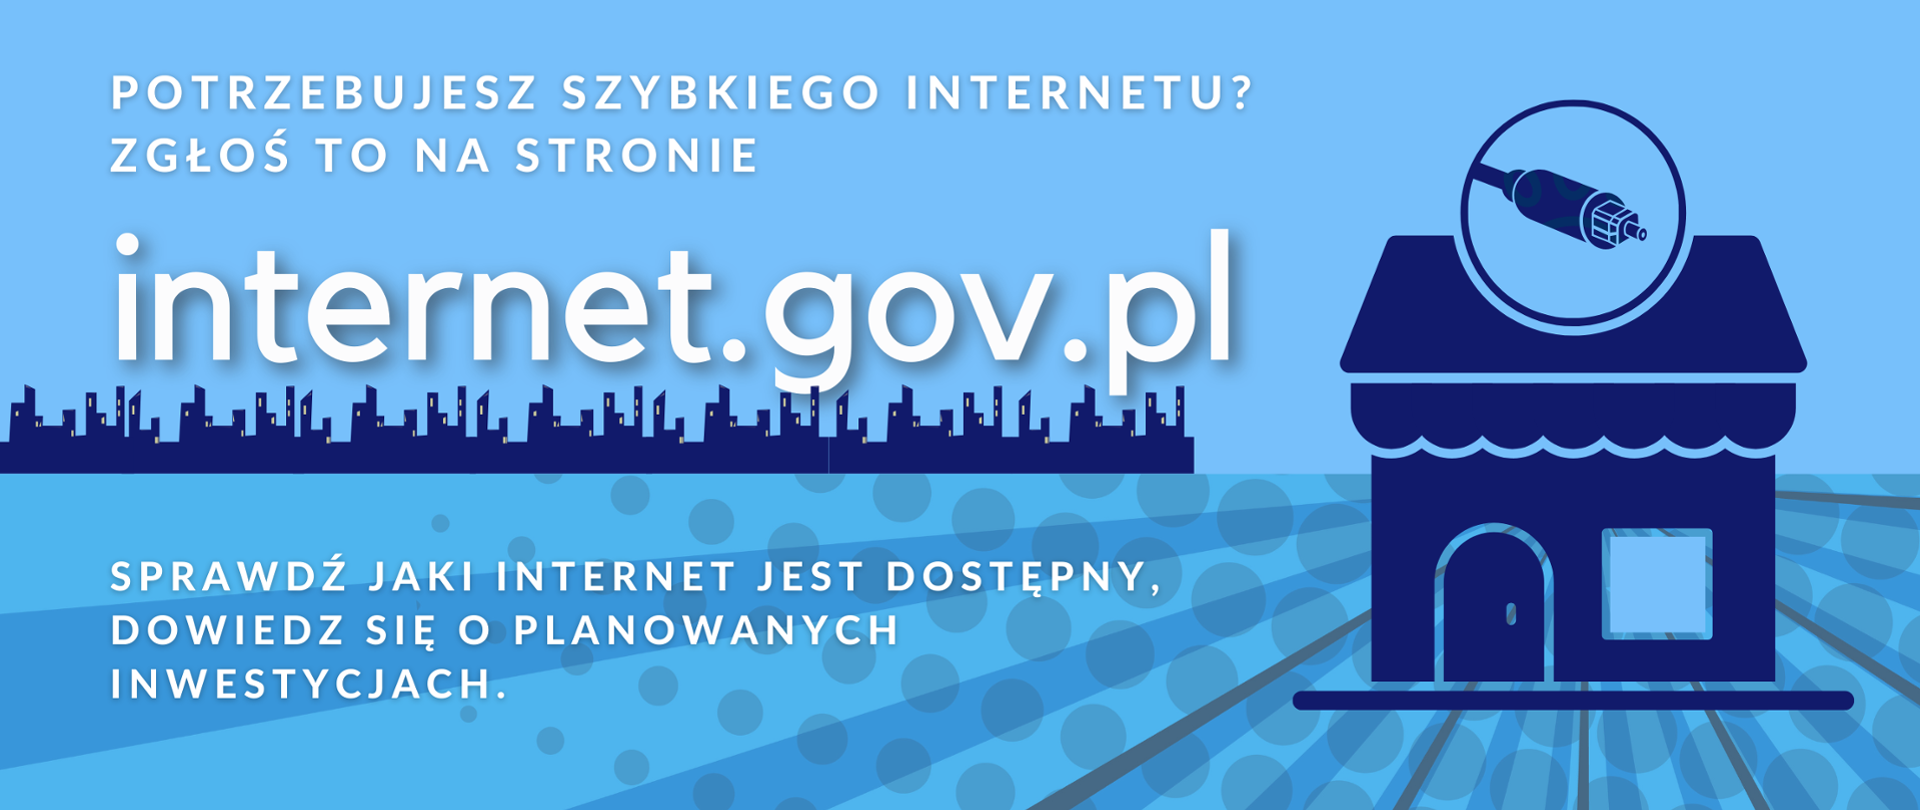 grafika przedstawia na niebieskim tle po prawej stronie ikonkę domu, z lewej strony napis Internet gov.pl i informacje odnośnie zgłoszenia potrzeby internetu